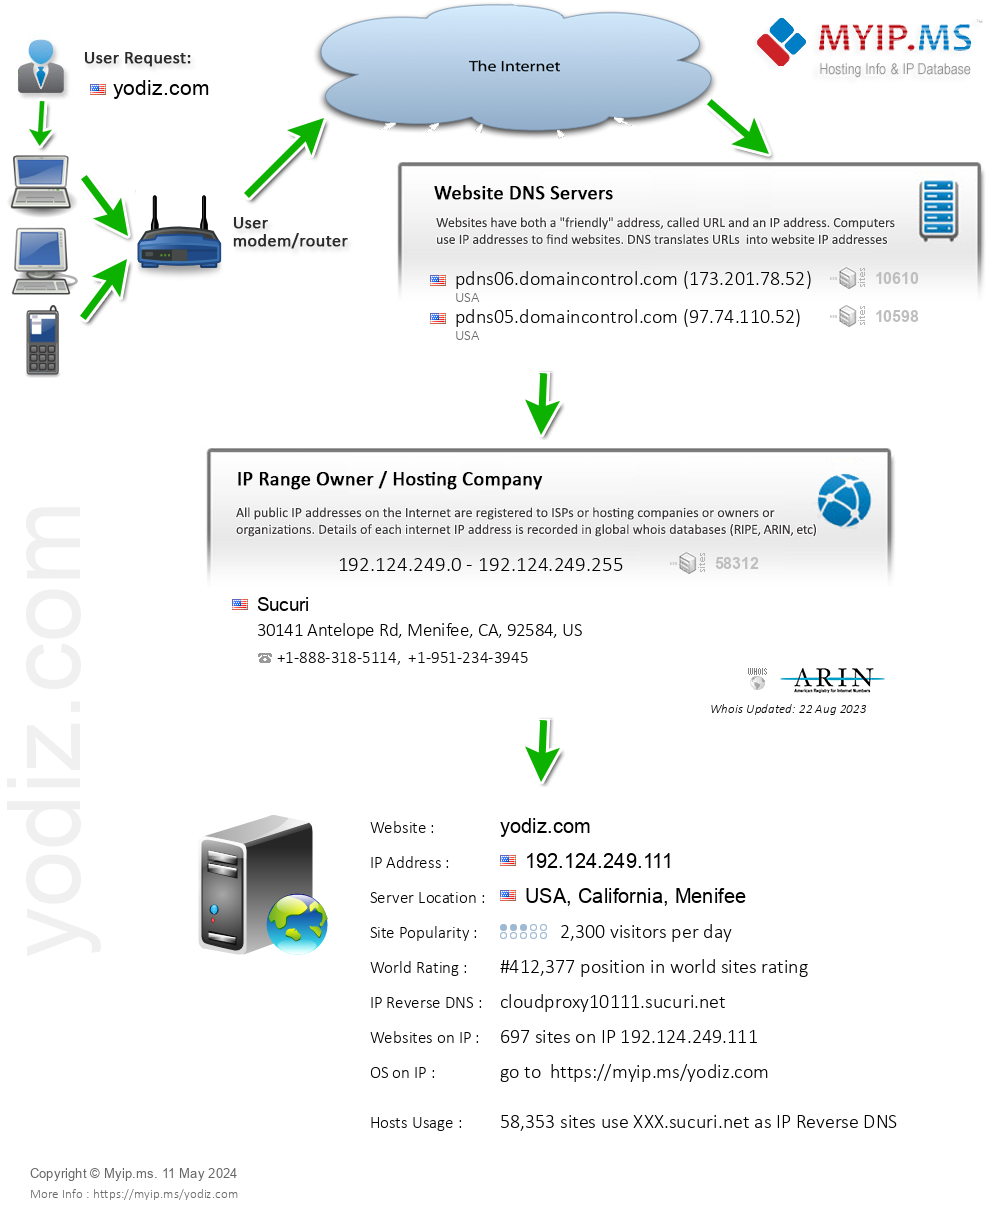 Yodiz.com - Website Hosting Visual IP Diagram